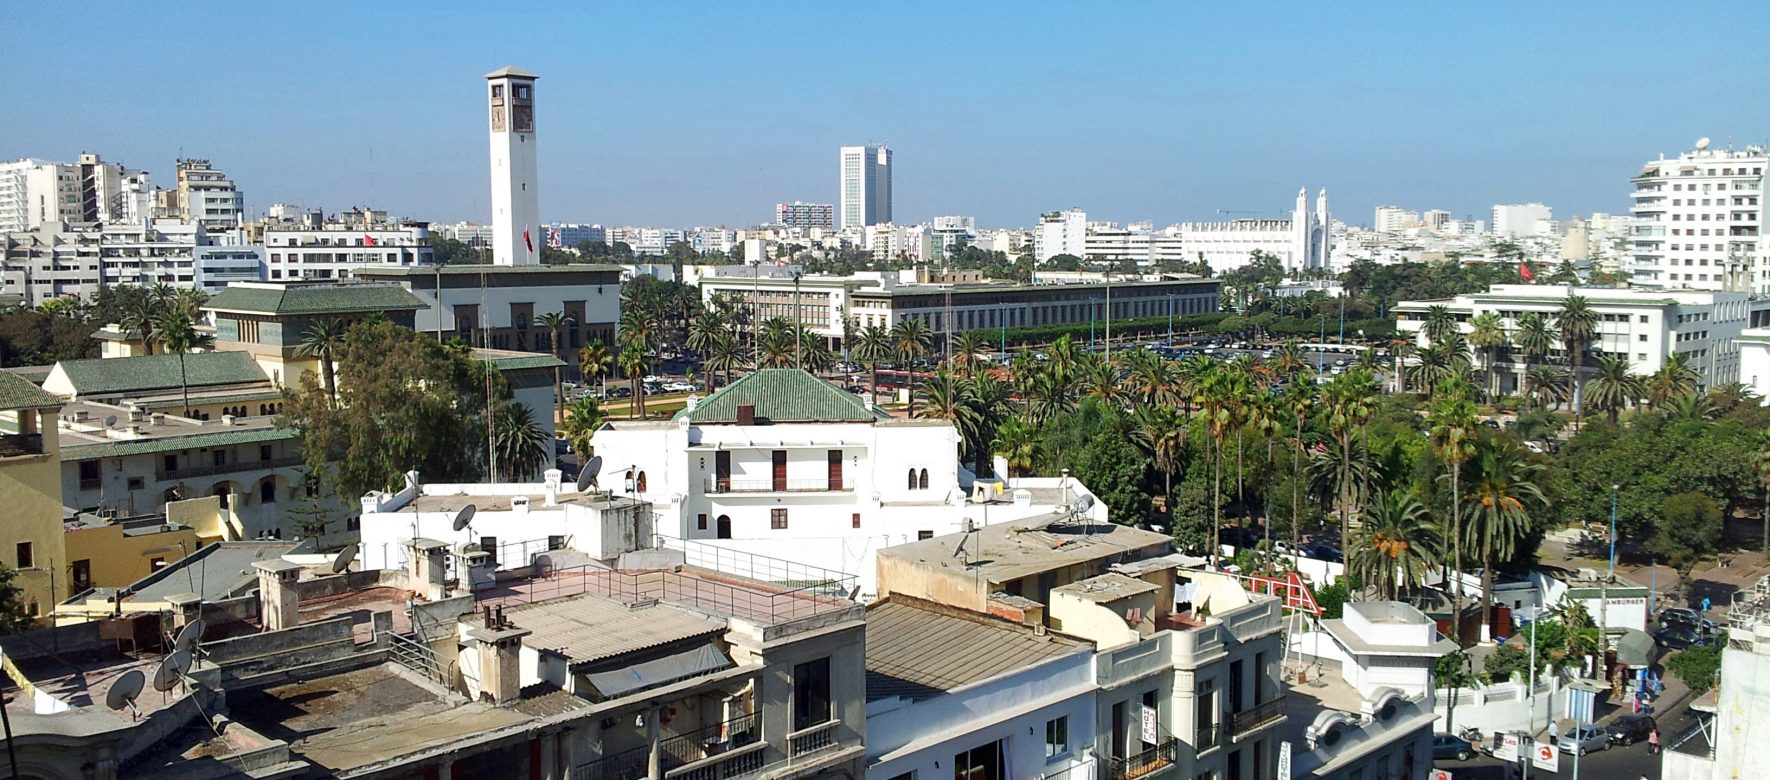 96,6 millions d'euros de prêt : le Maroc premier pays à bénéficier de l'instrument de financement novateur par la Banque Africaine de Développement